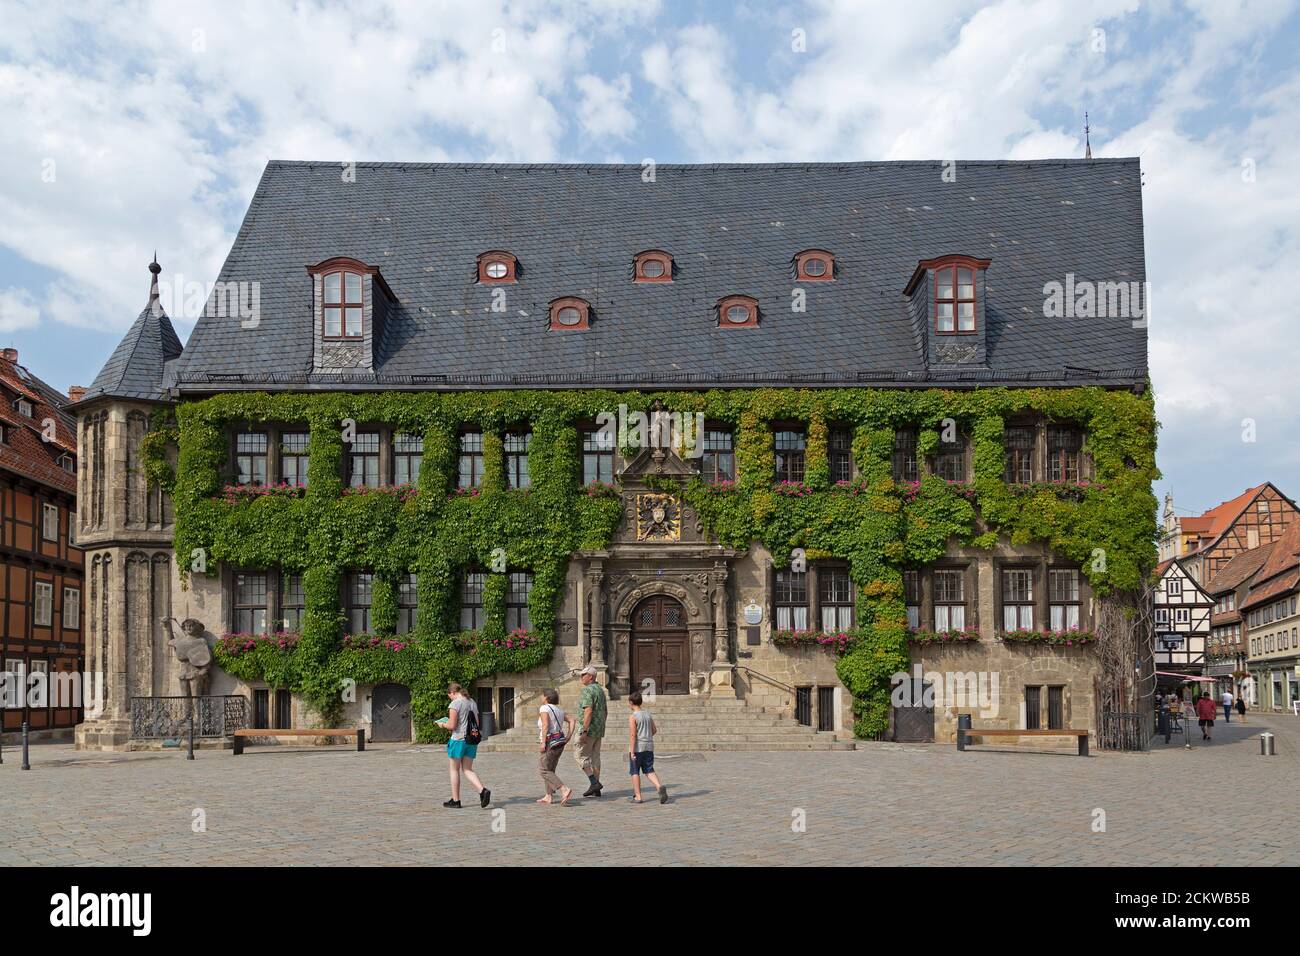 Hôtel de ville, place du marché, Quedlinburg, patrimoine culturel mondial de l'UNESCO, Saxe Anhalt, Allemagne Banque D'Images